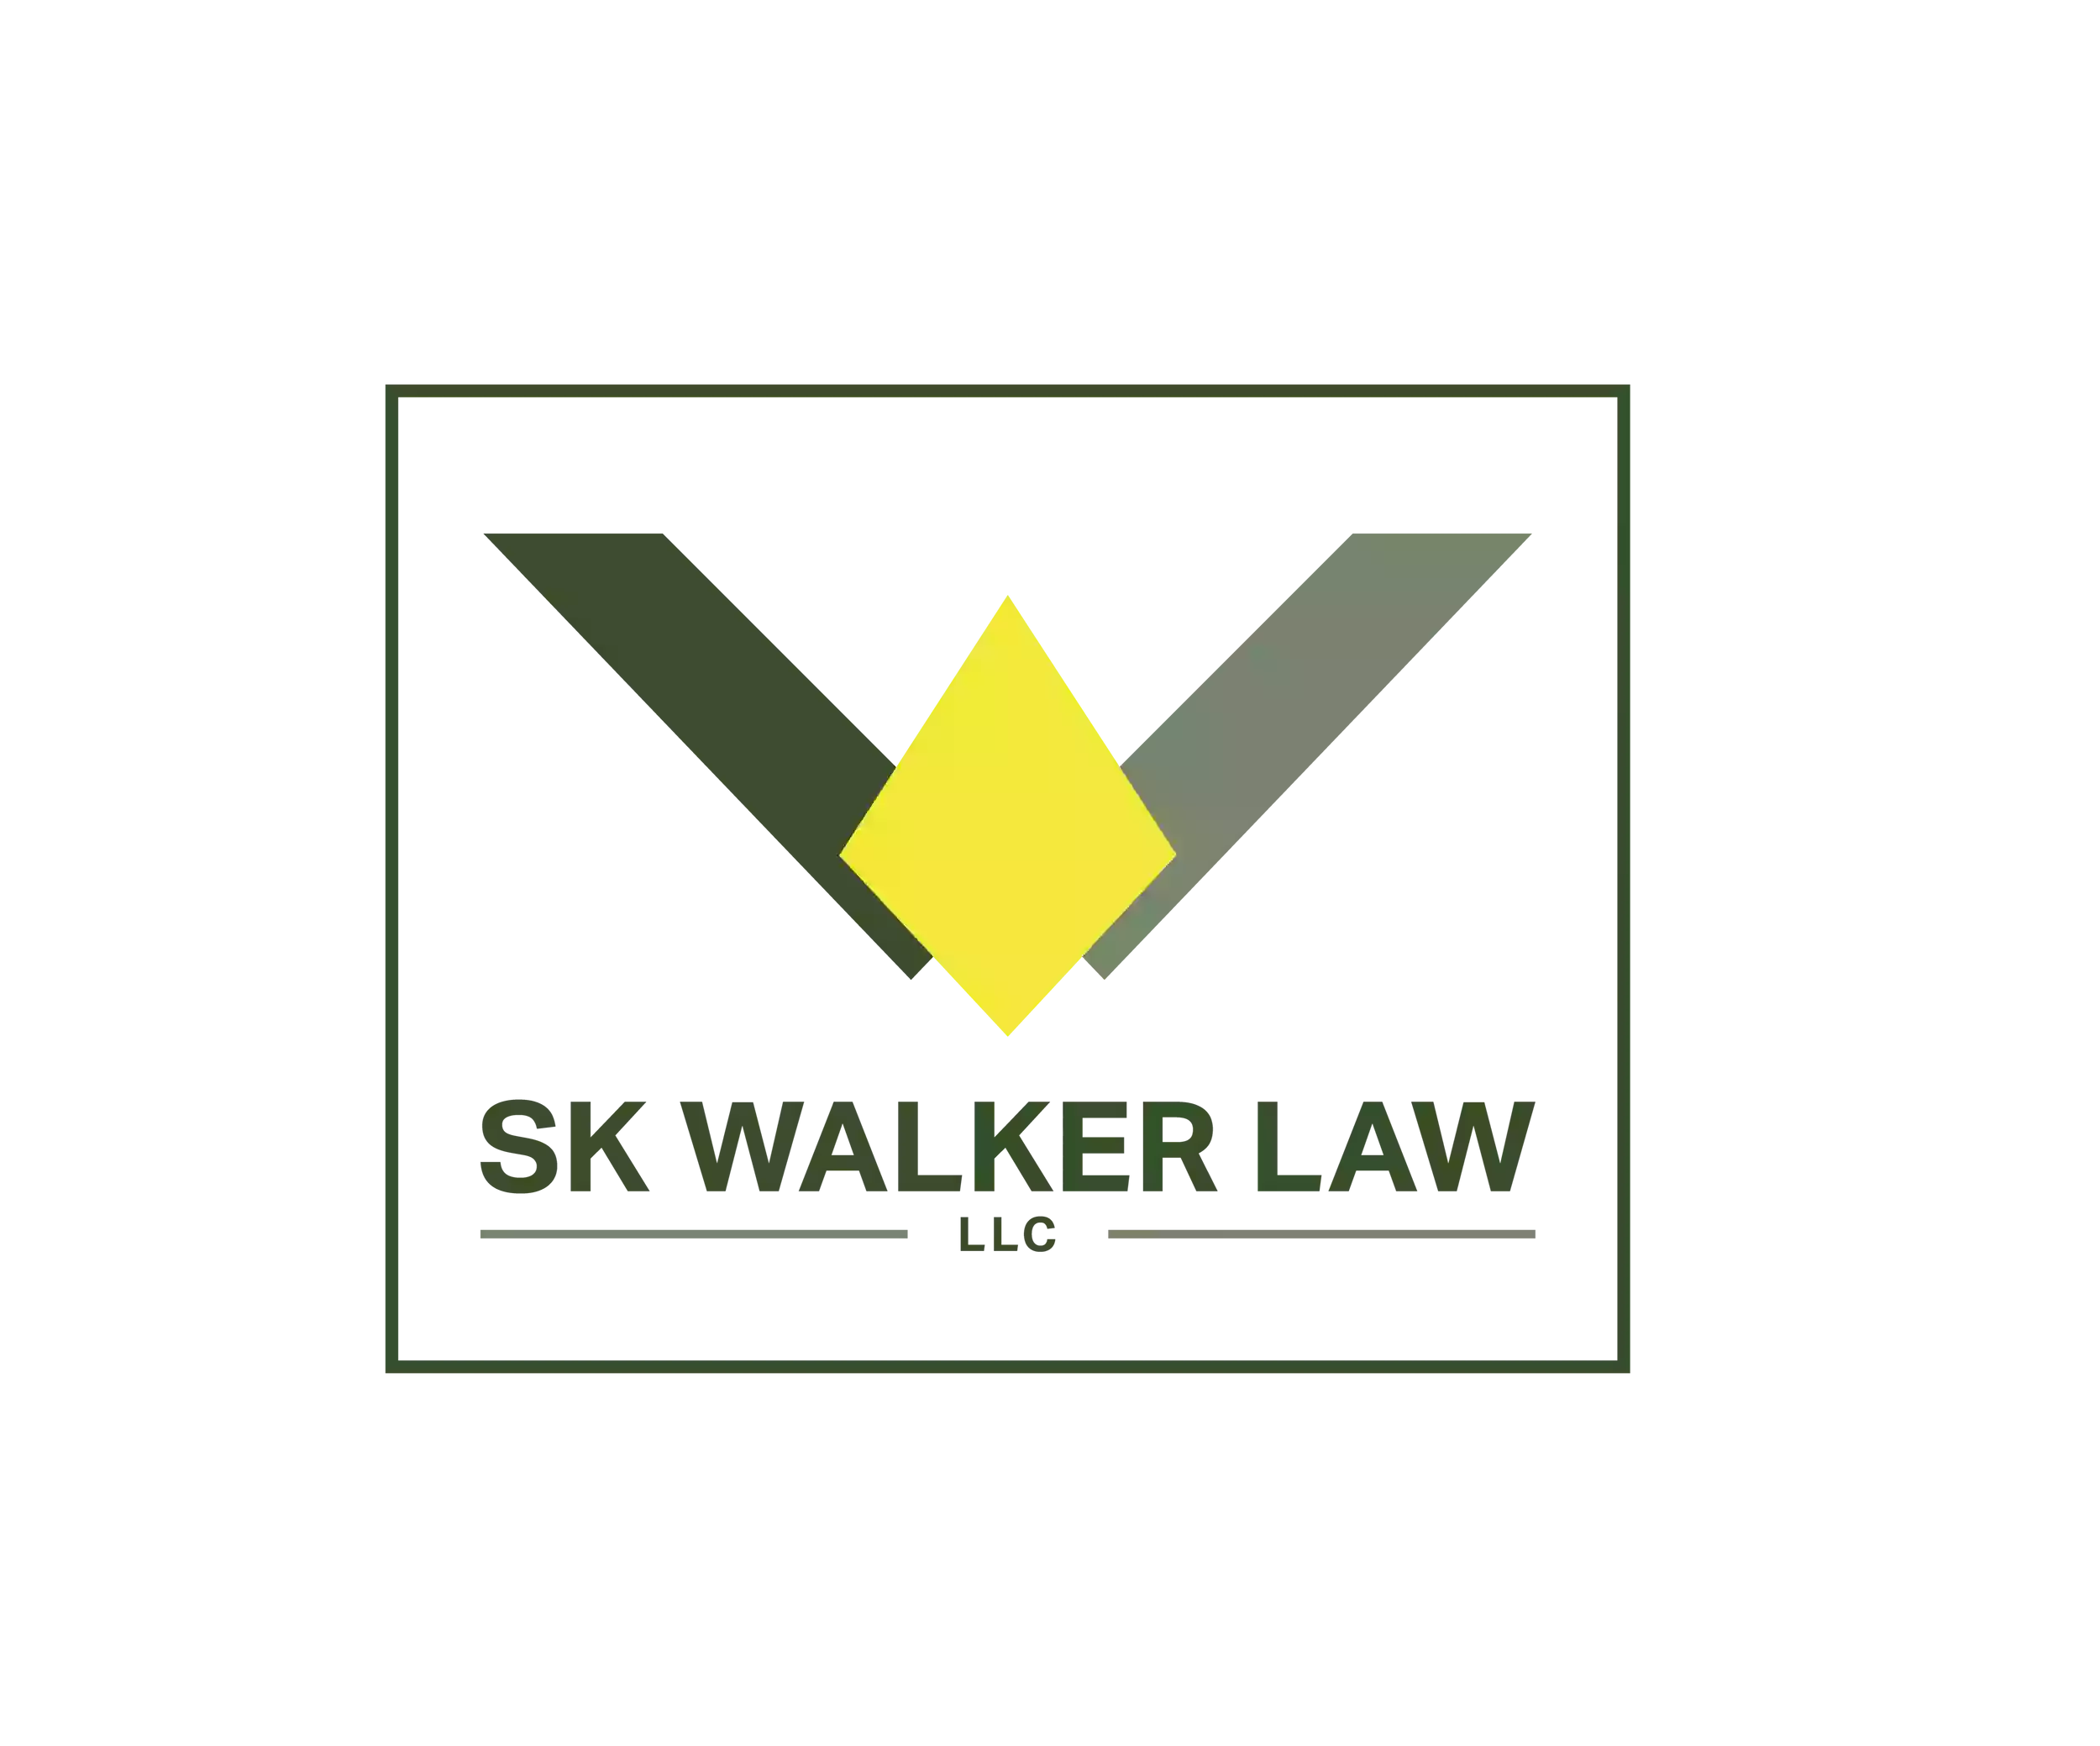 SK Walker Law LLC